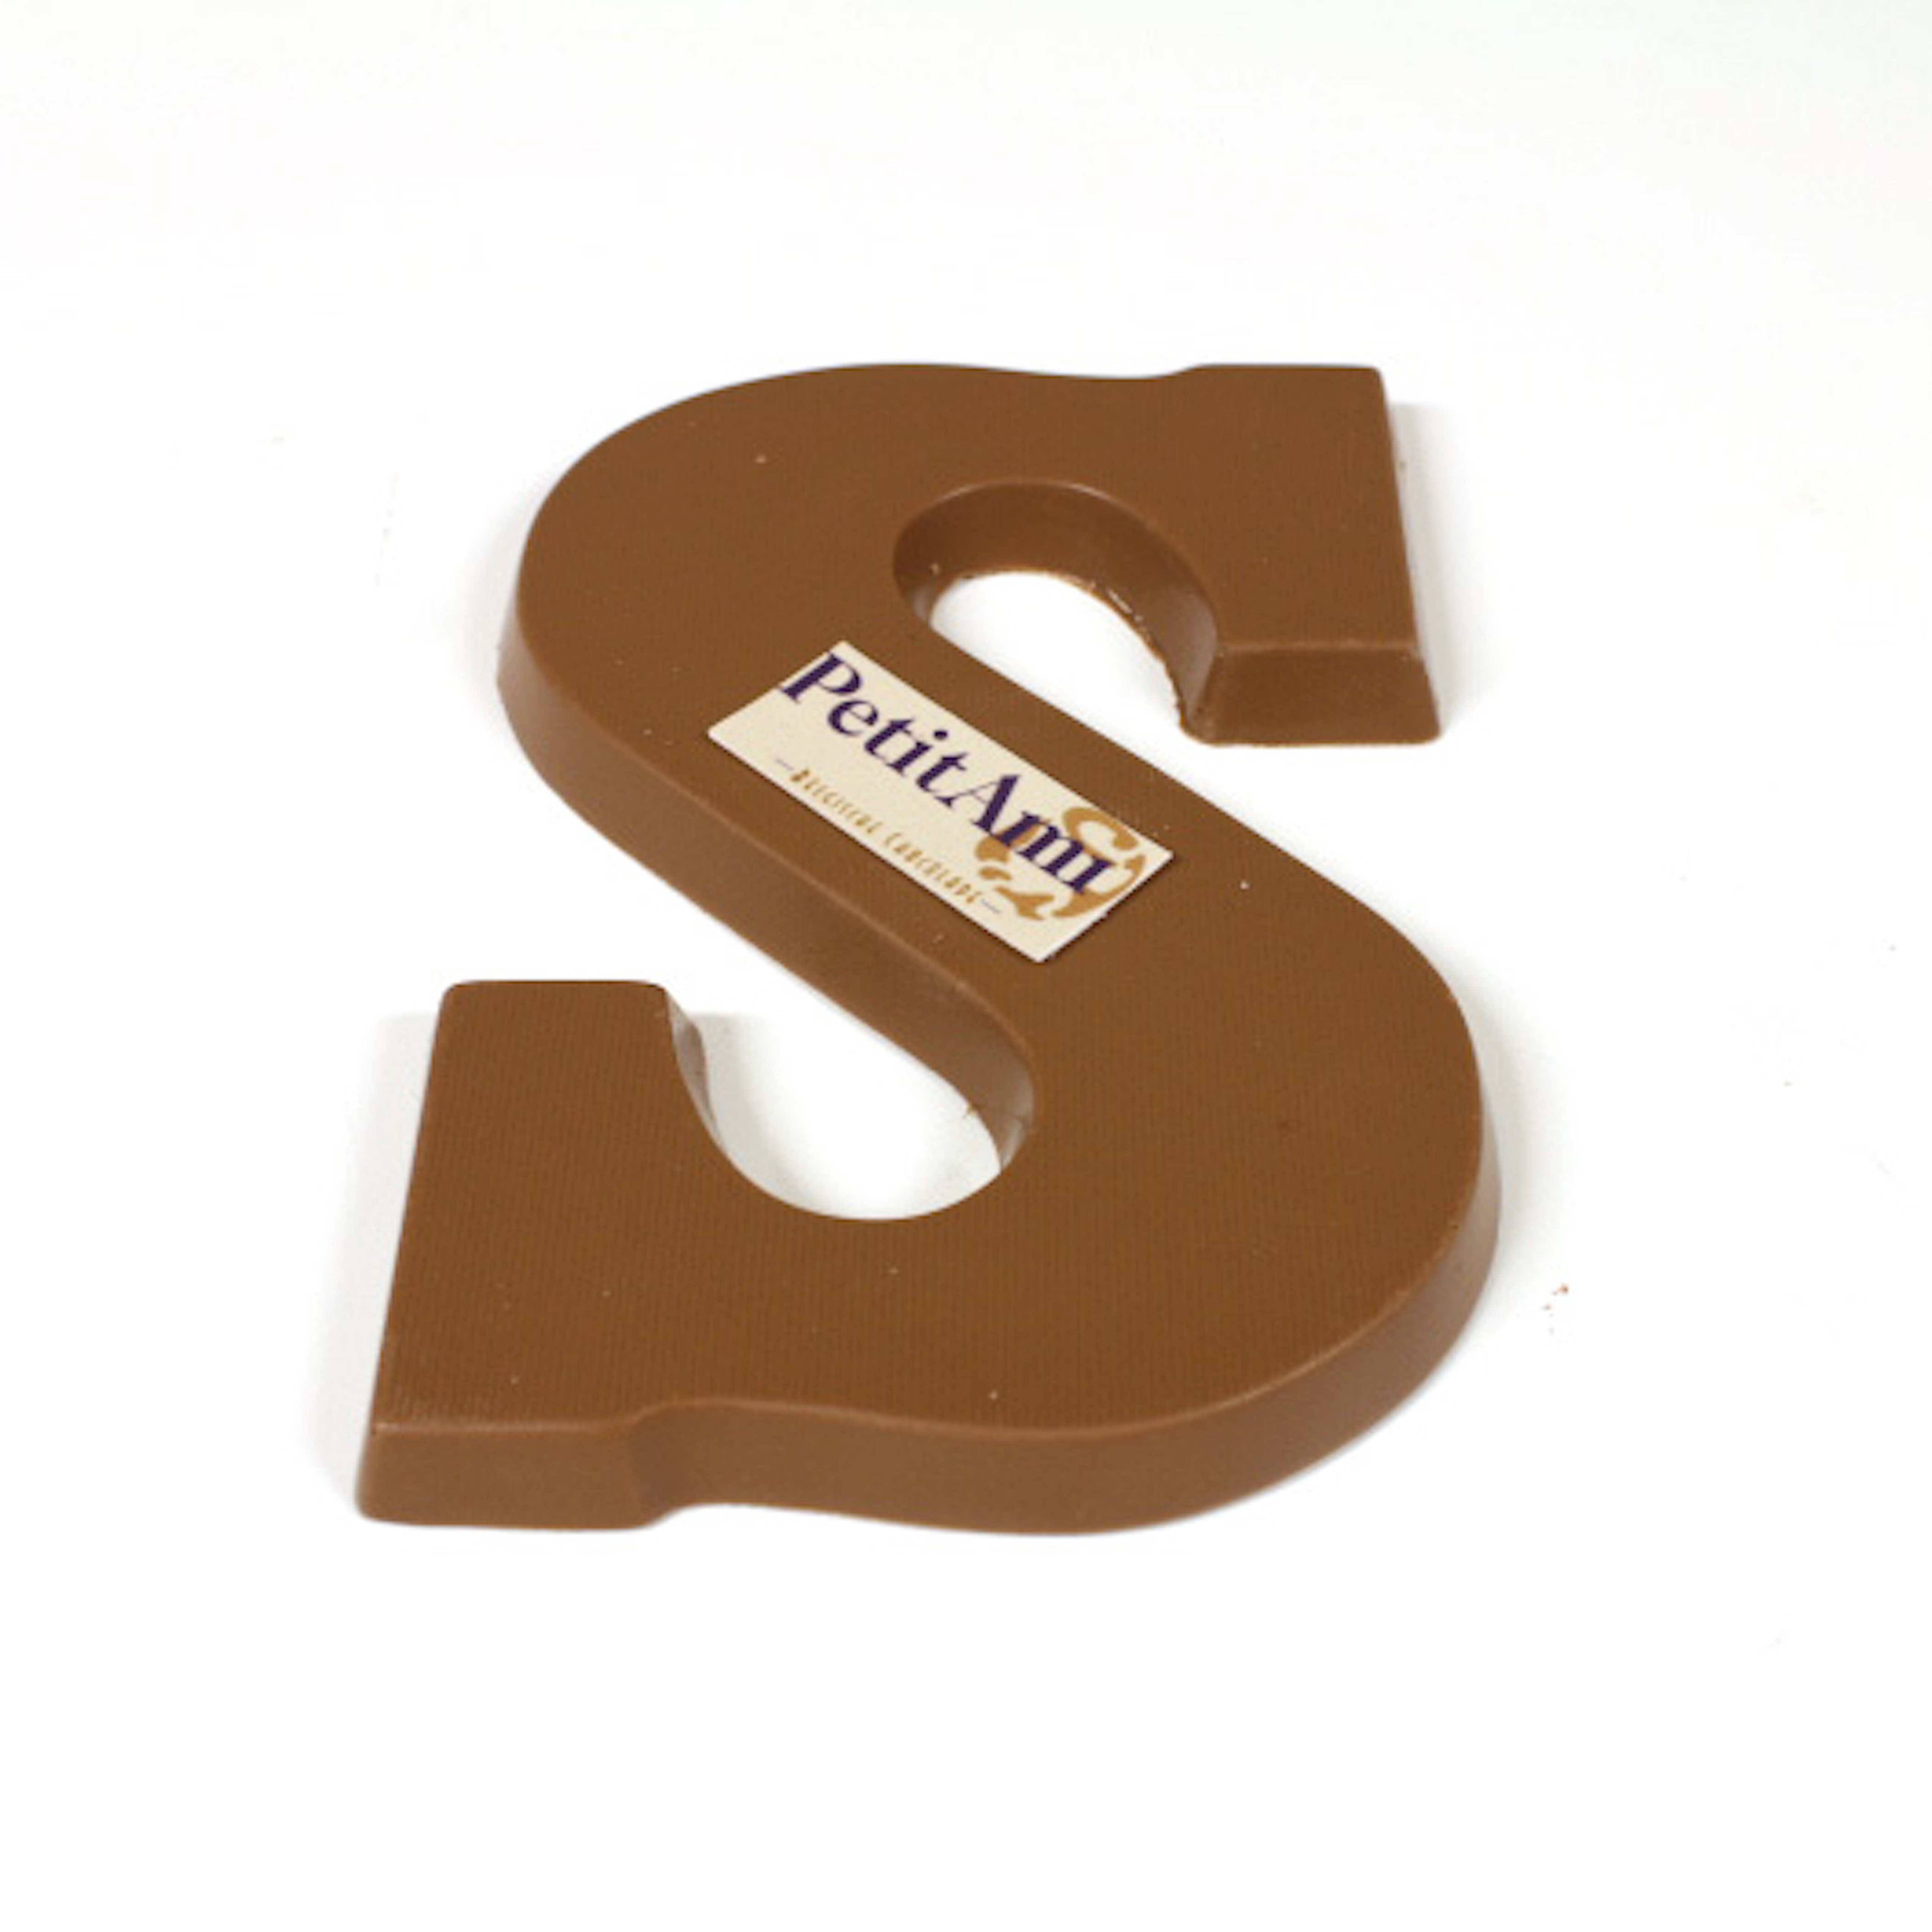 Wonderbaarlijk Chocolade letters bestellen | Nergens goedkoper | Chocolade Geschenken YV-21